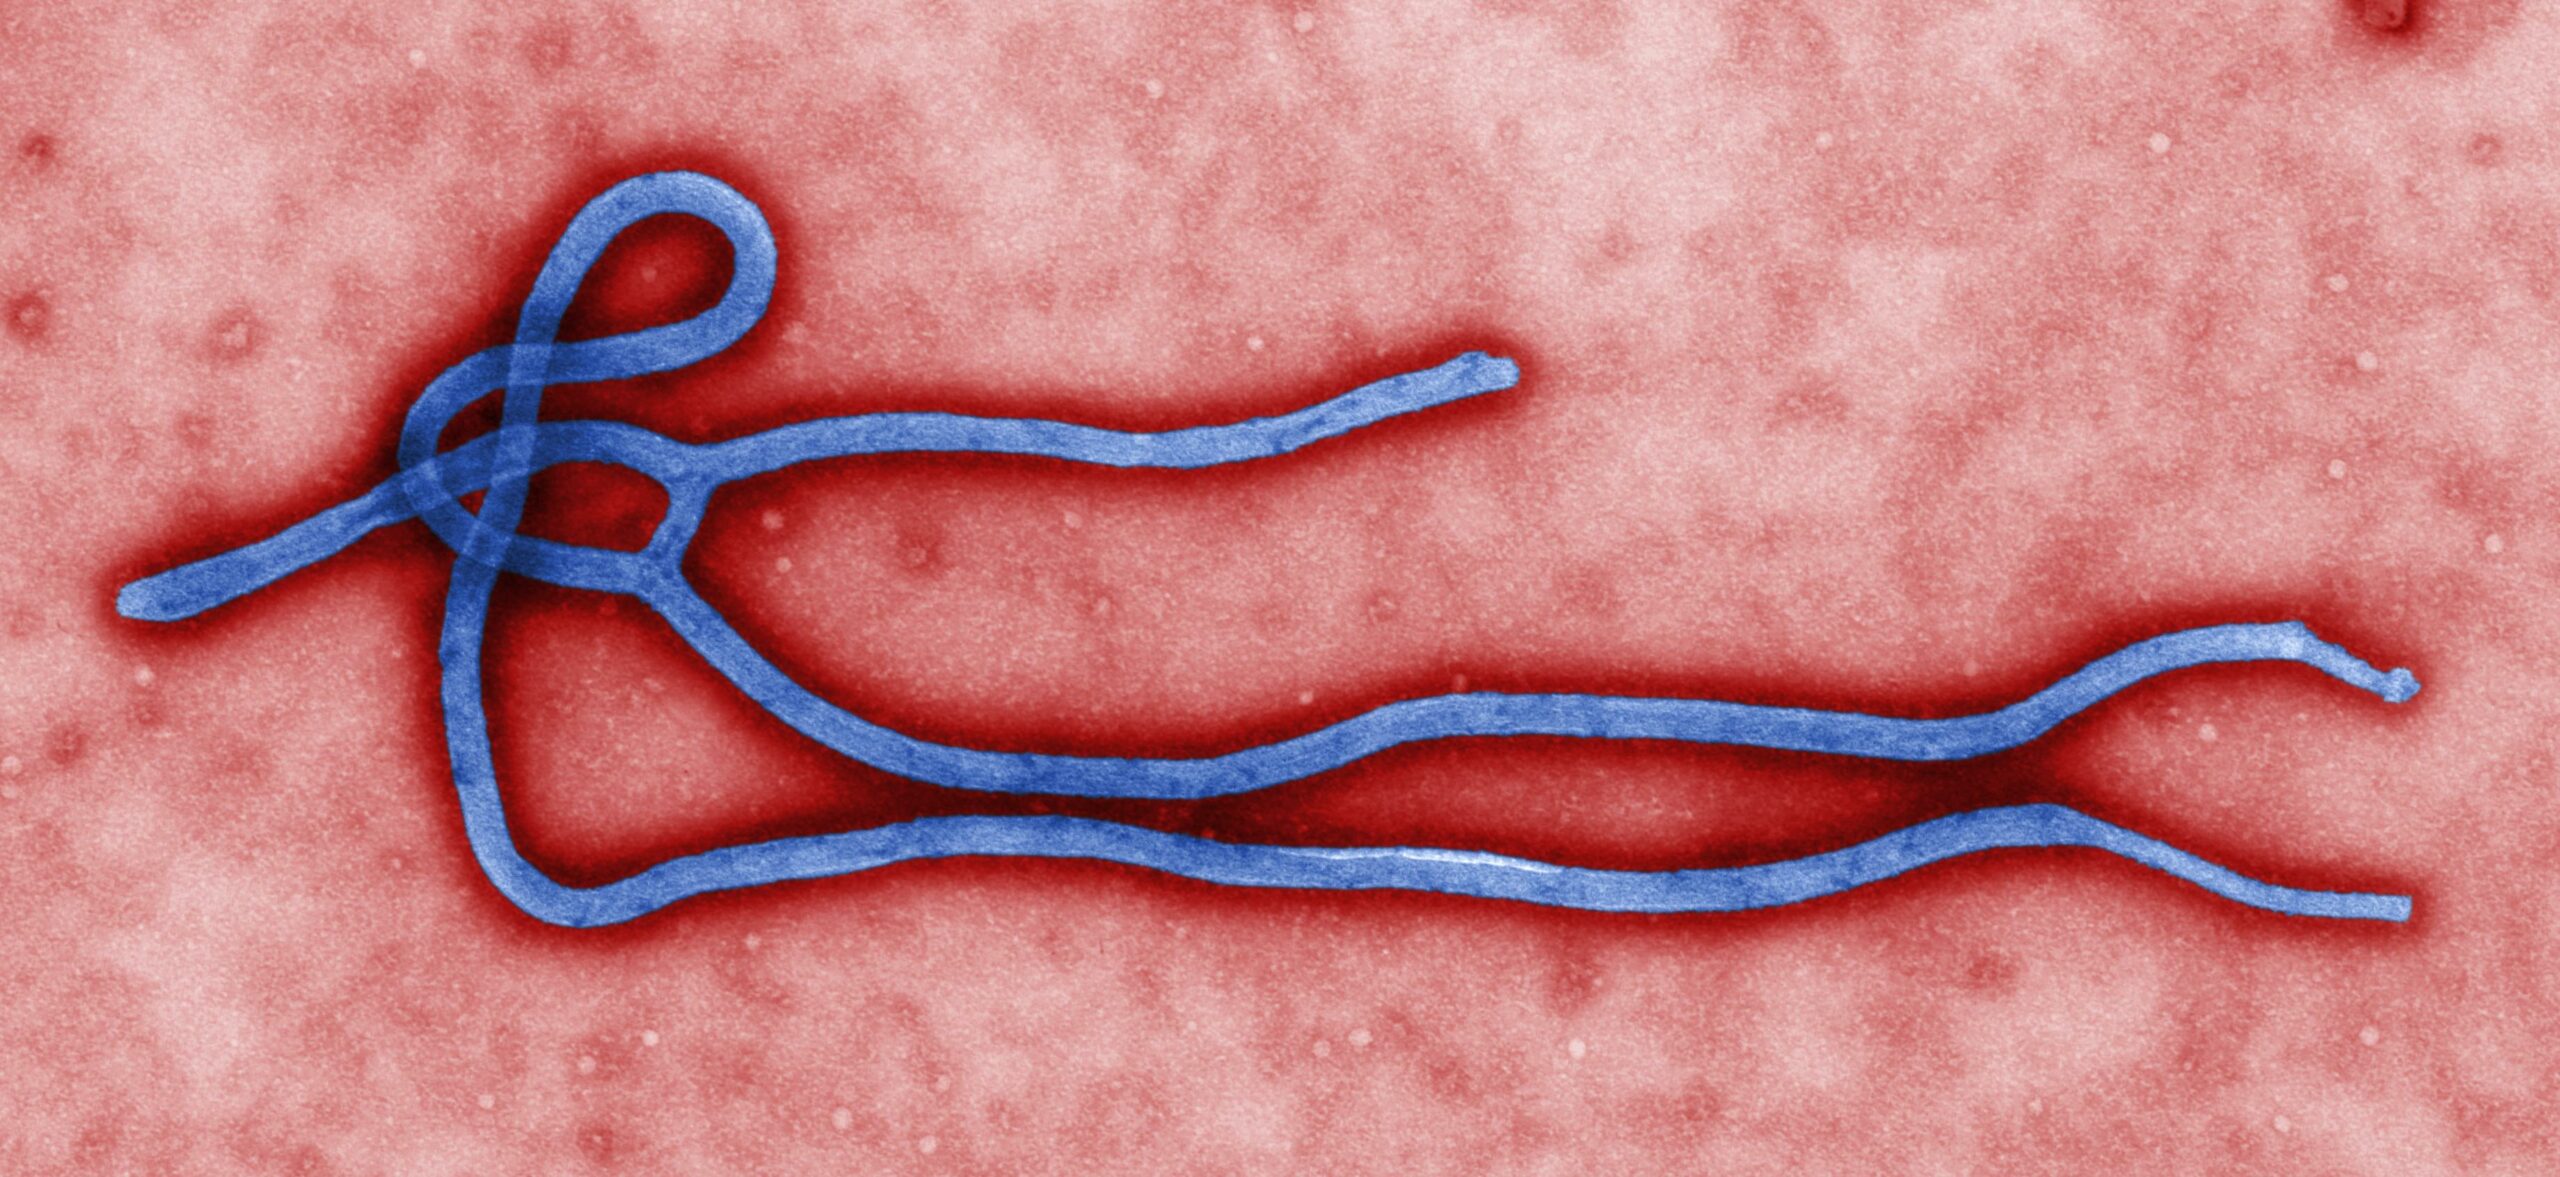 Une infirmière avait vaincu 2 fois Ebola, elle a été hospitalisée